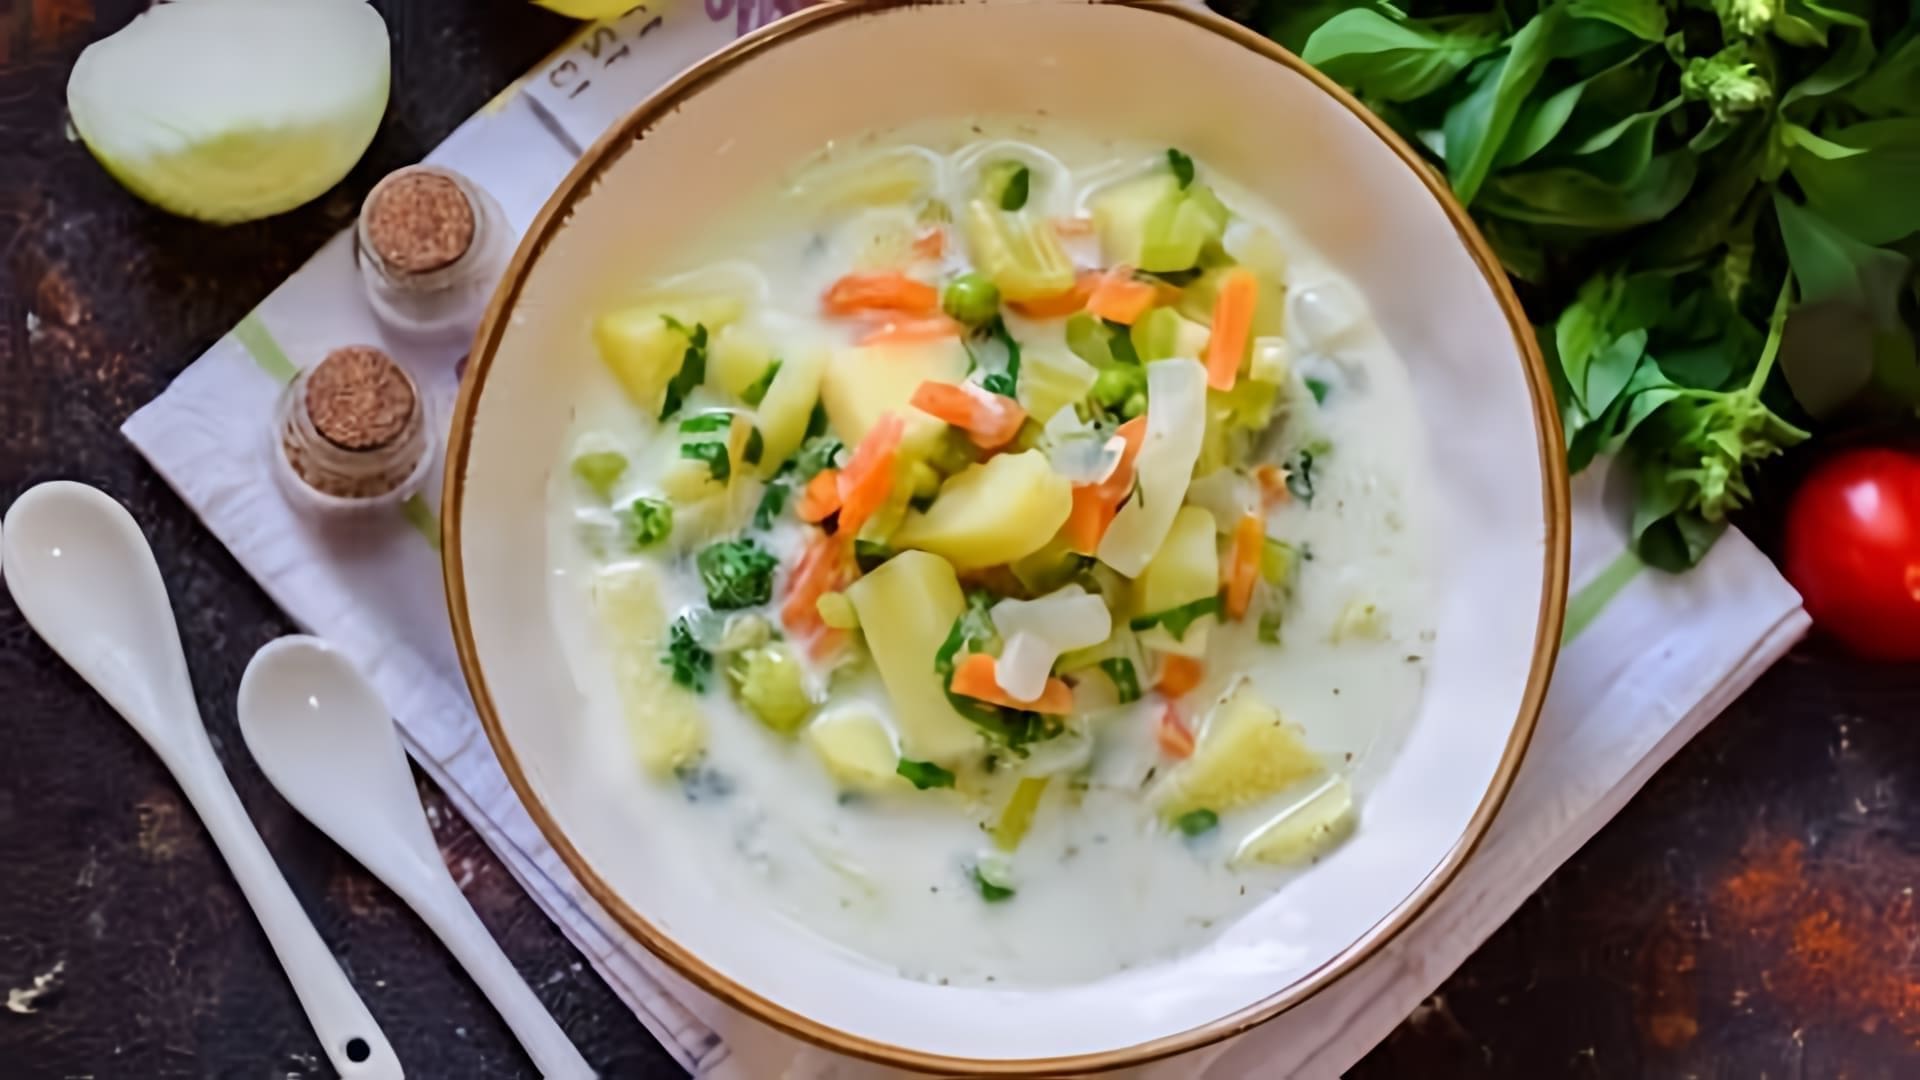 В этом видео демонстрируется рецепт сырного супа с сельдереем